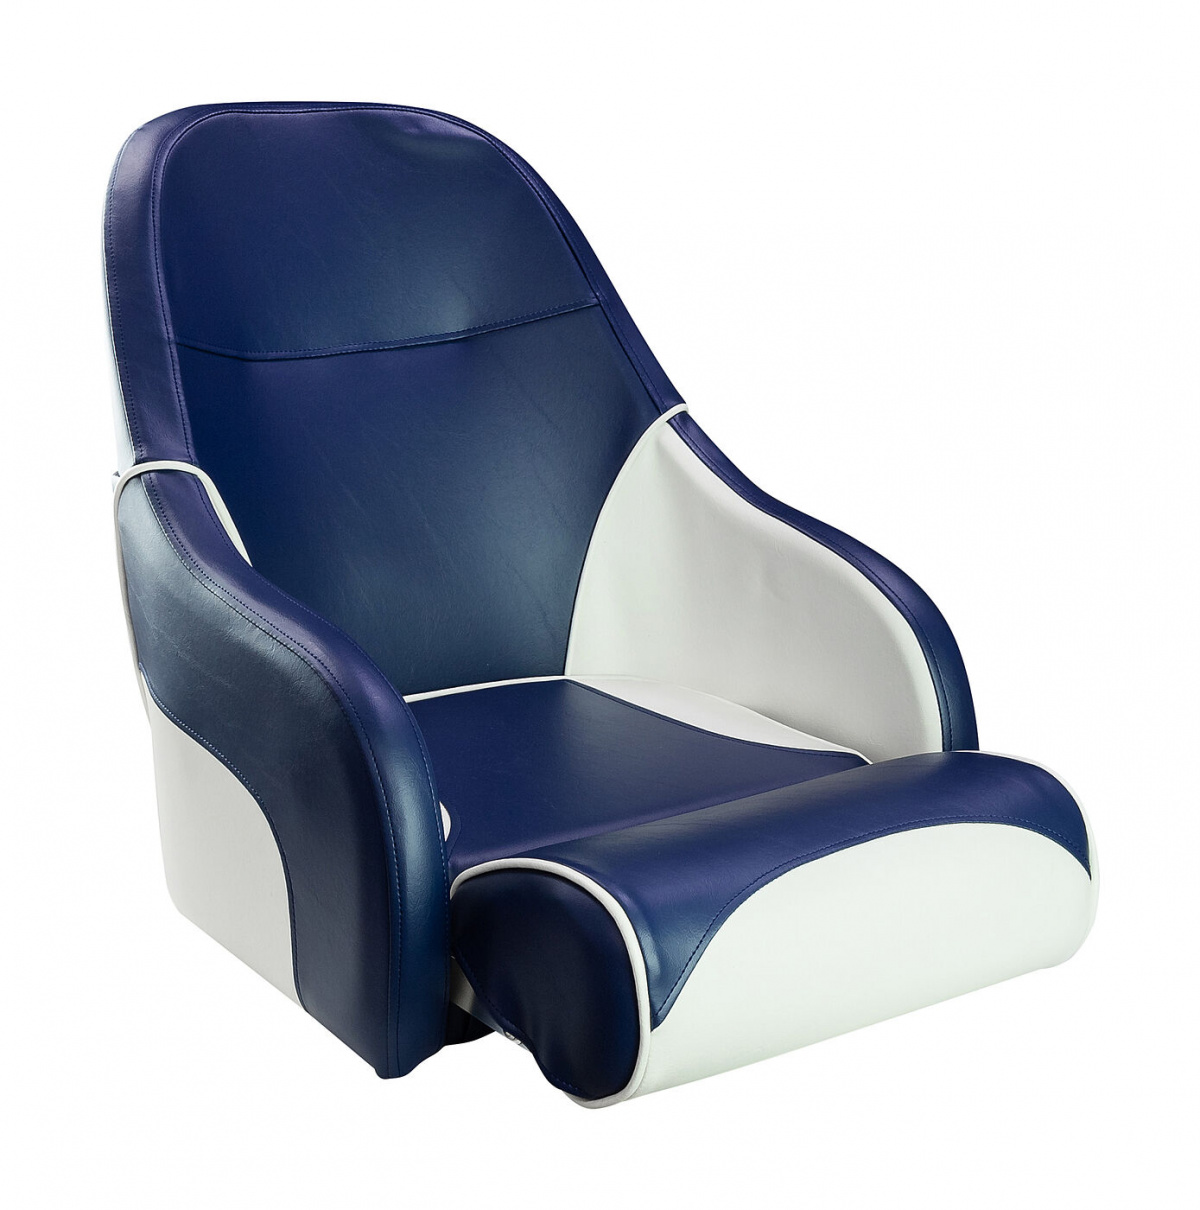 Кресло с болстером Ocean Flip Up, обивка синий/белый винил, 889-7736